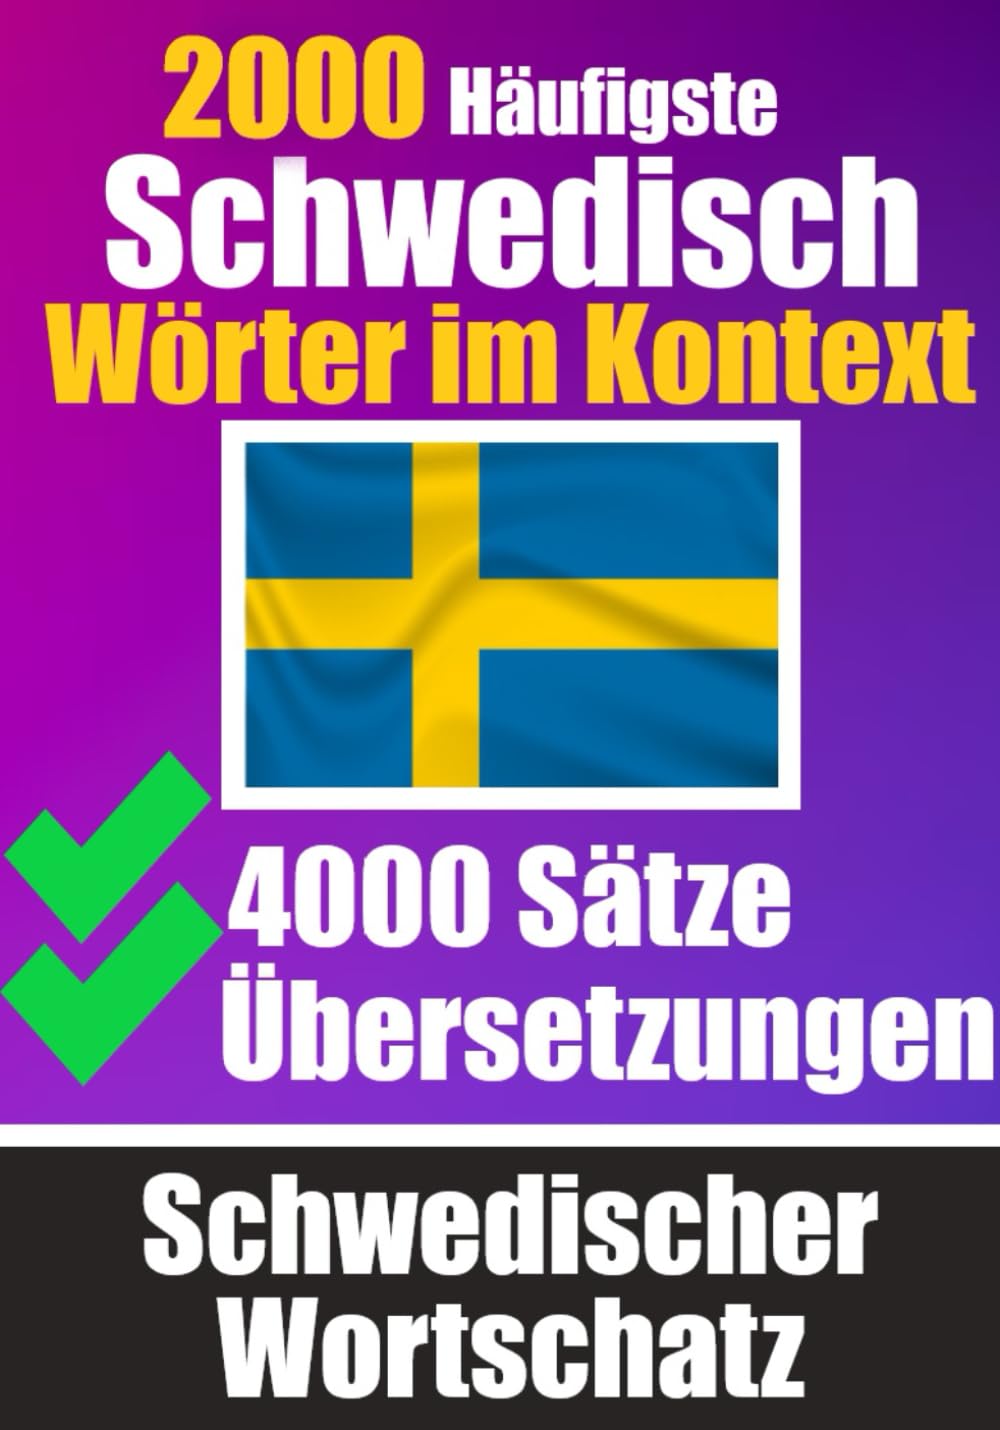 2000 Häufigste Schwedische Wörter im Kontext | 4000 Sätze mit Übersetzung - Skriuwer.com